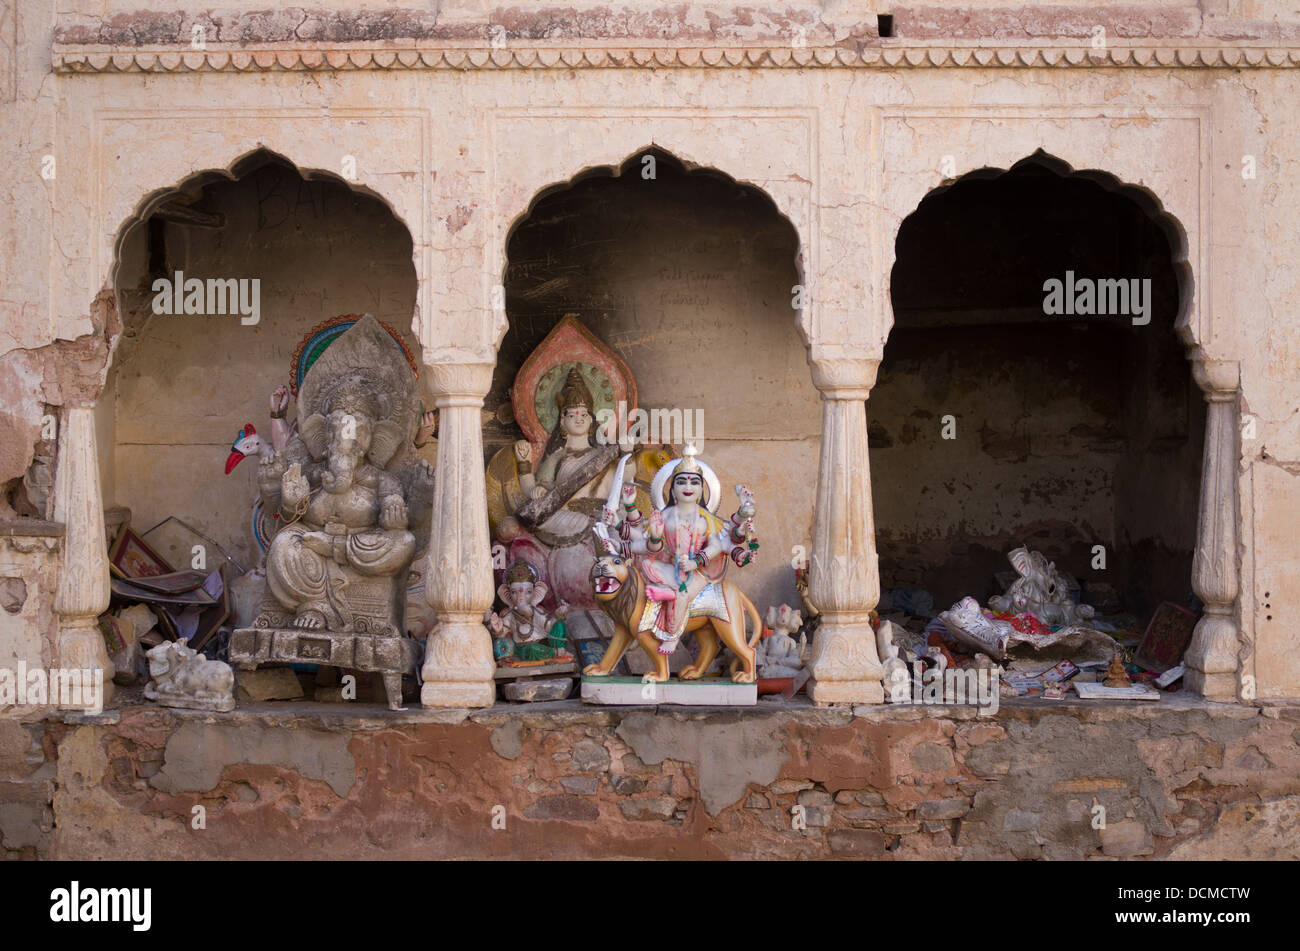 Hindu statues at Galta Monkey Palace / Temple - Jaipur, Rajasthan, India Stock Photo